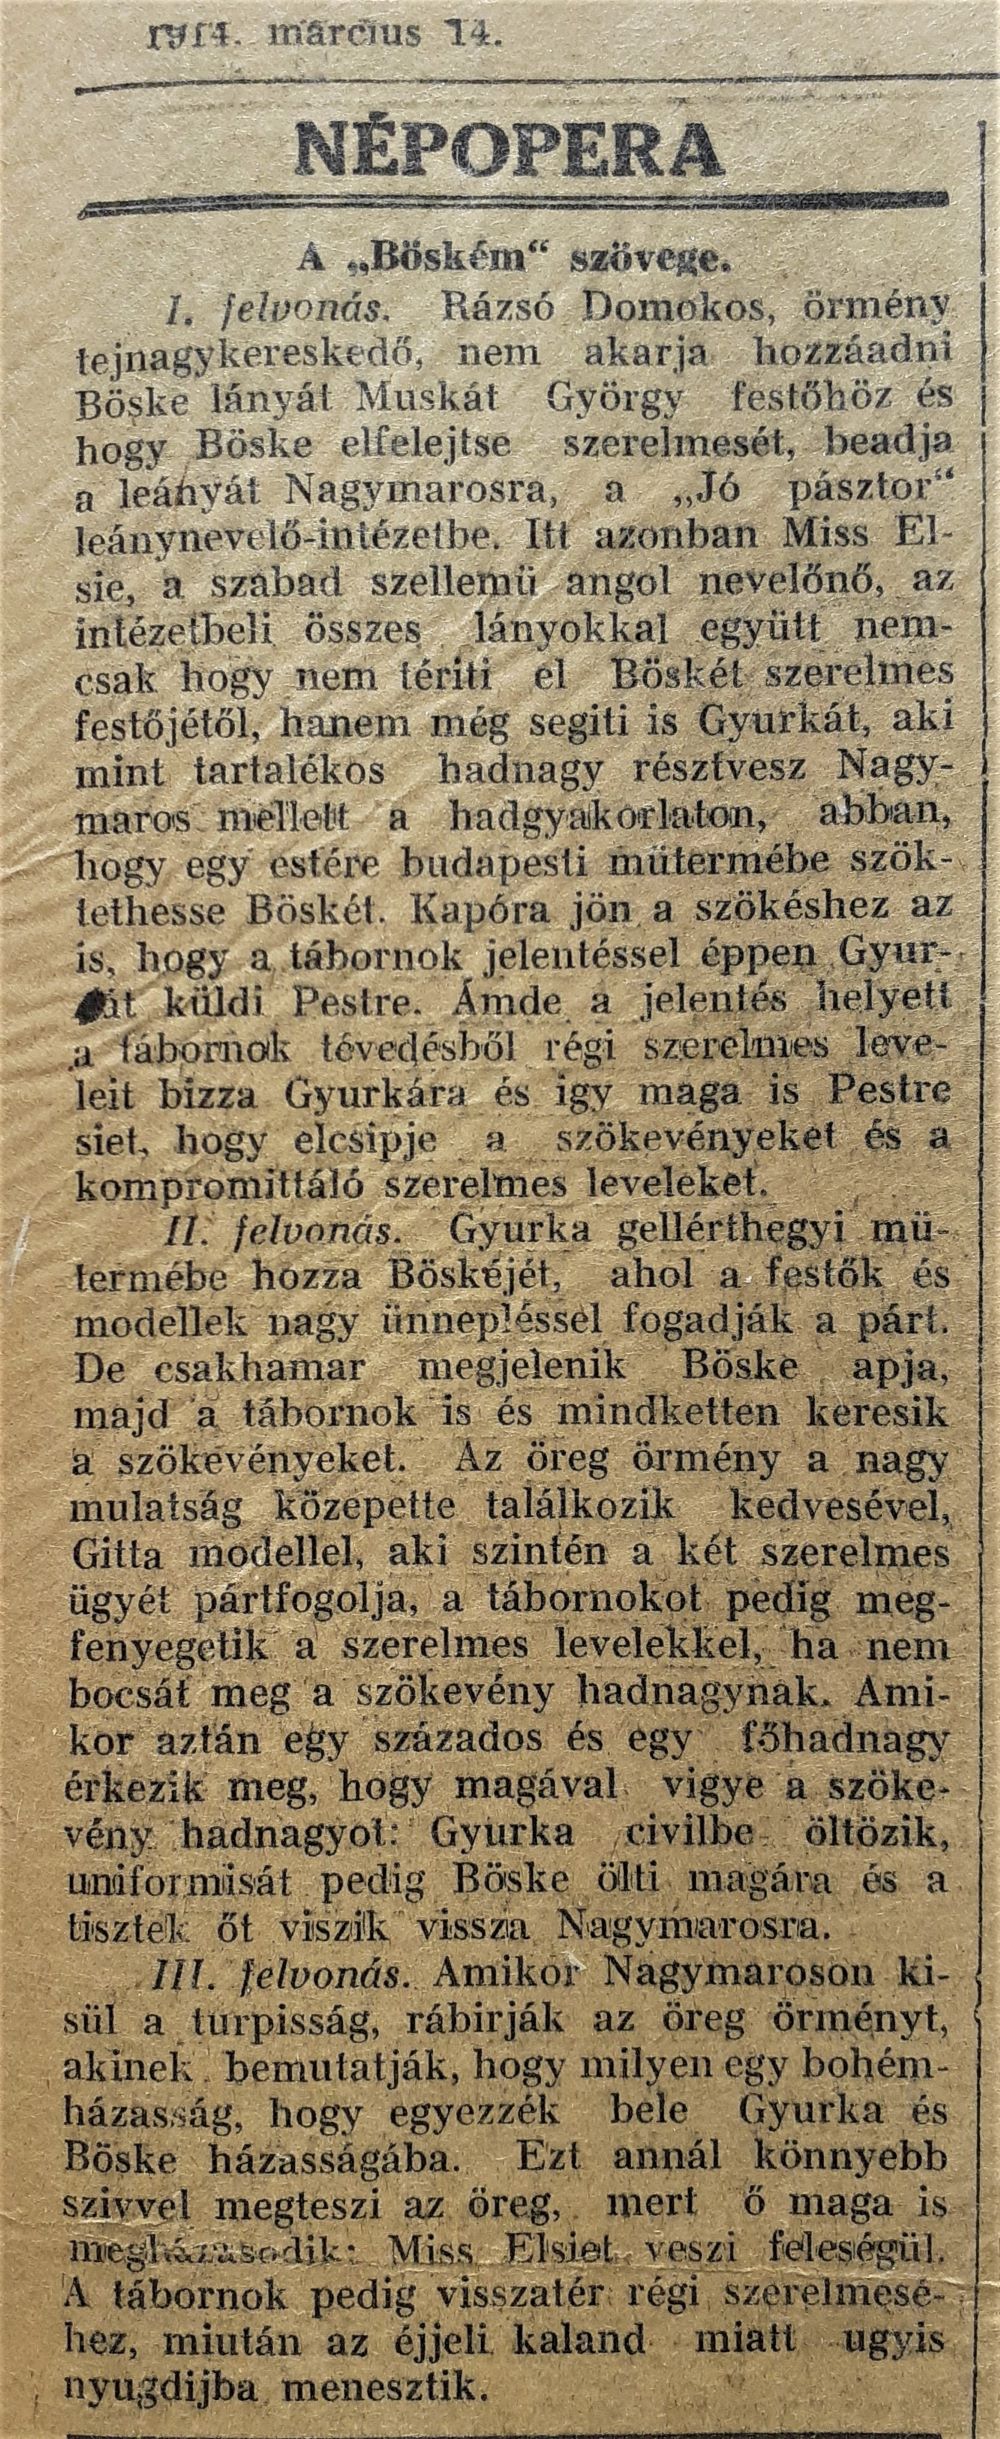 Gajáry István: Böském. Operett. Bemutató: Népopera, 1914. március 14. A Böském tartalma. In: Magyar Színpad, 1914. március 14. 10. évf. 73. sz., 7.